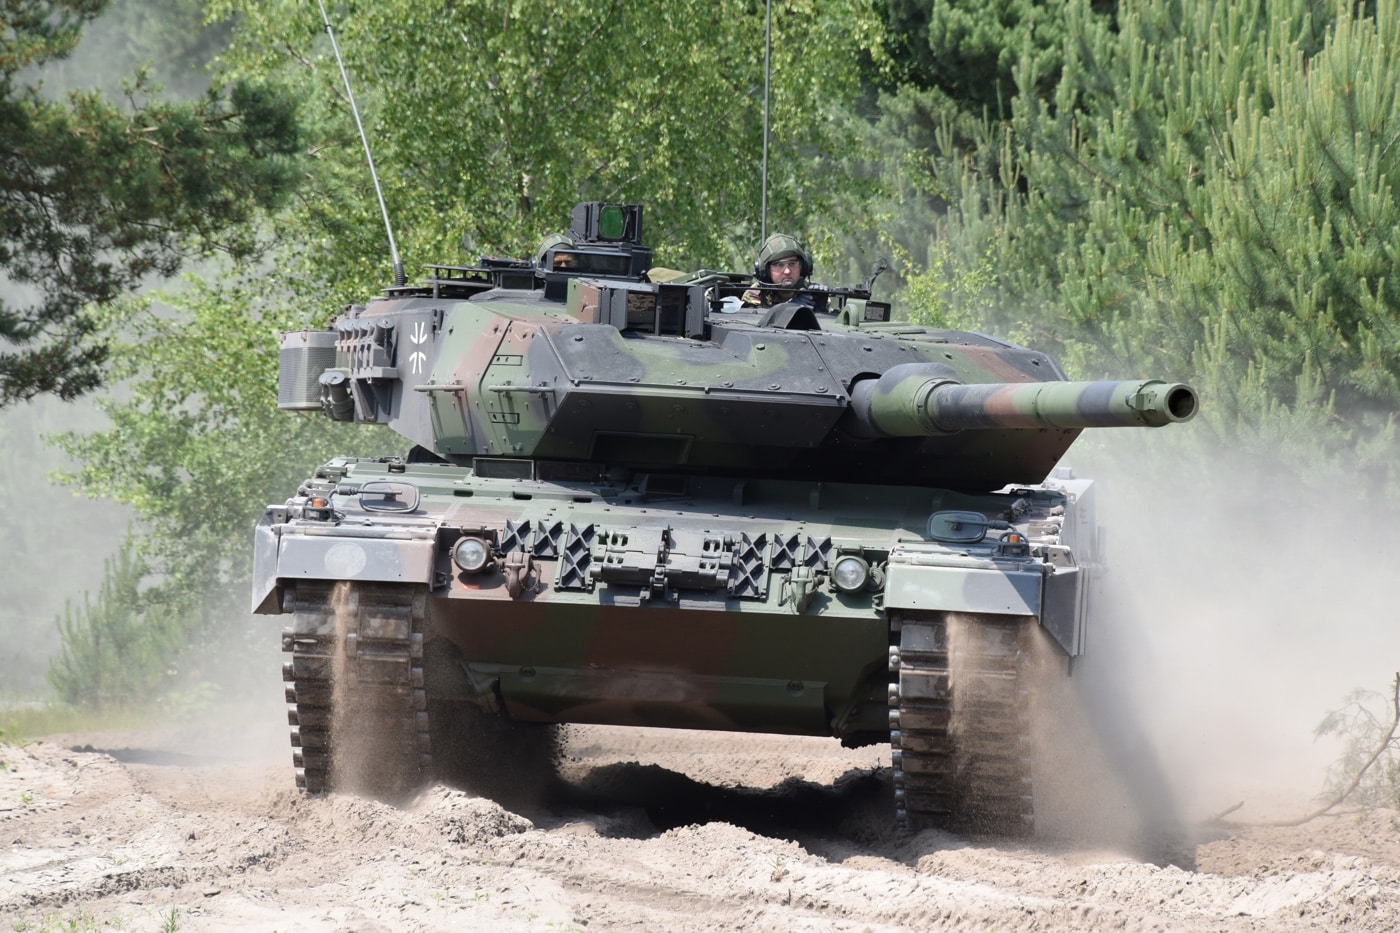 Leopard 2 main battle tank - model 2A7